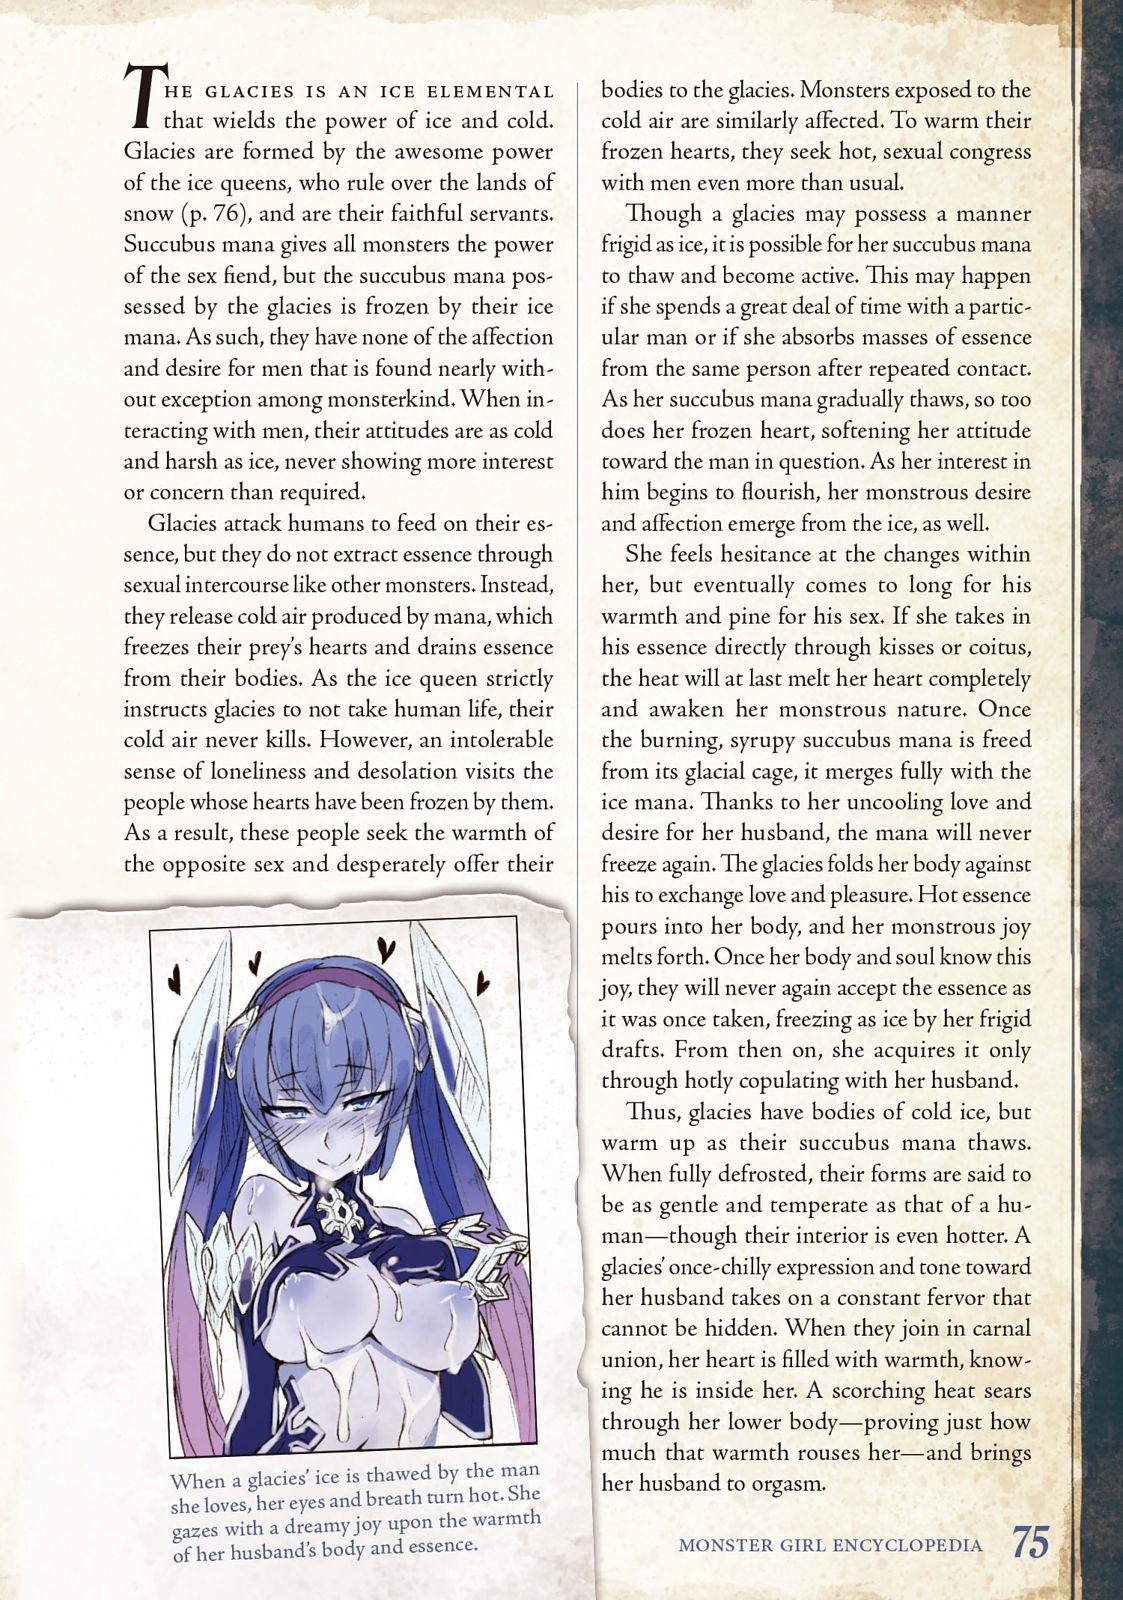 Monster Girl Encyclopedia Vol. 2 75